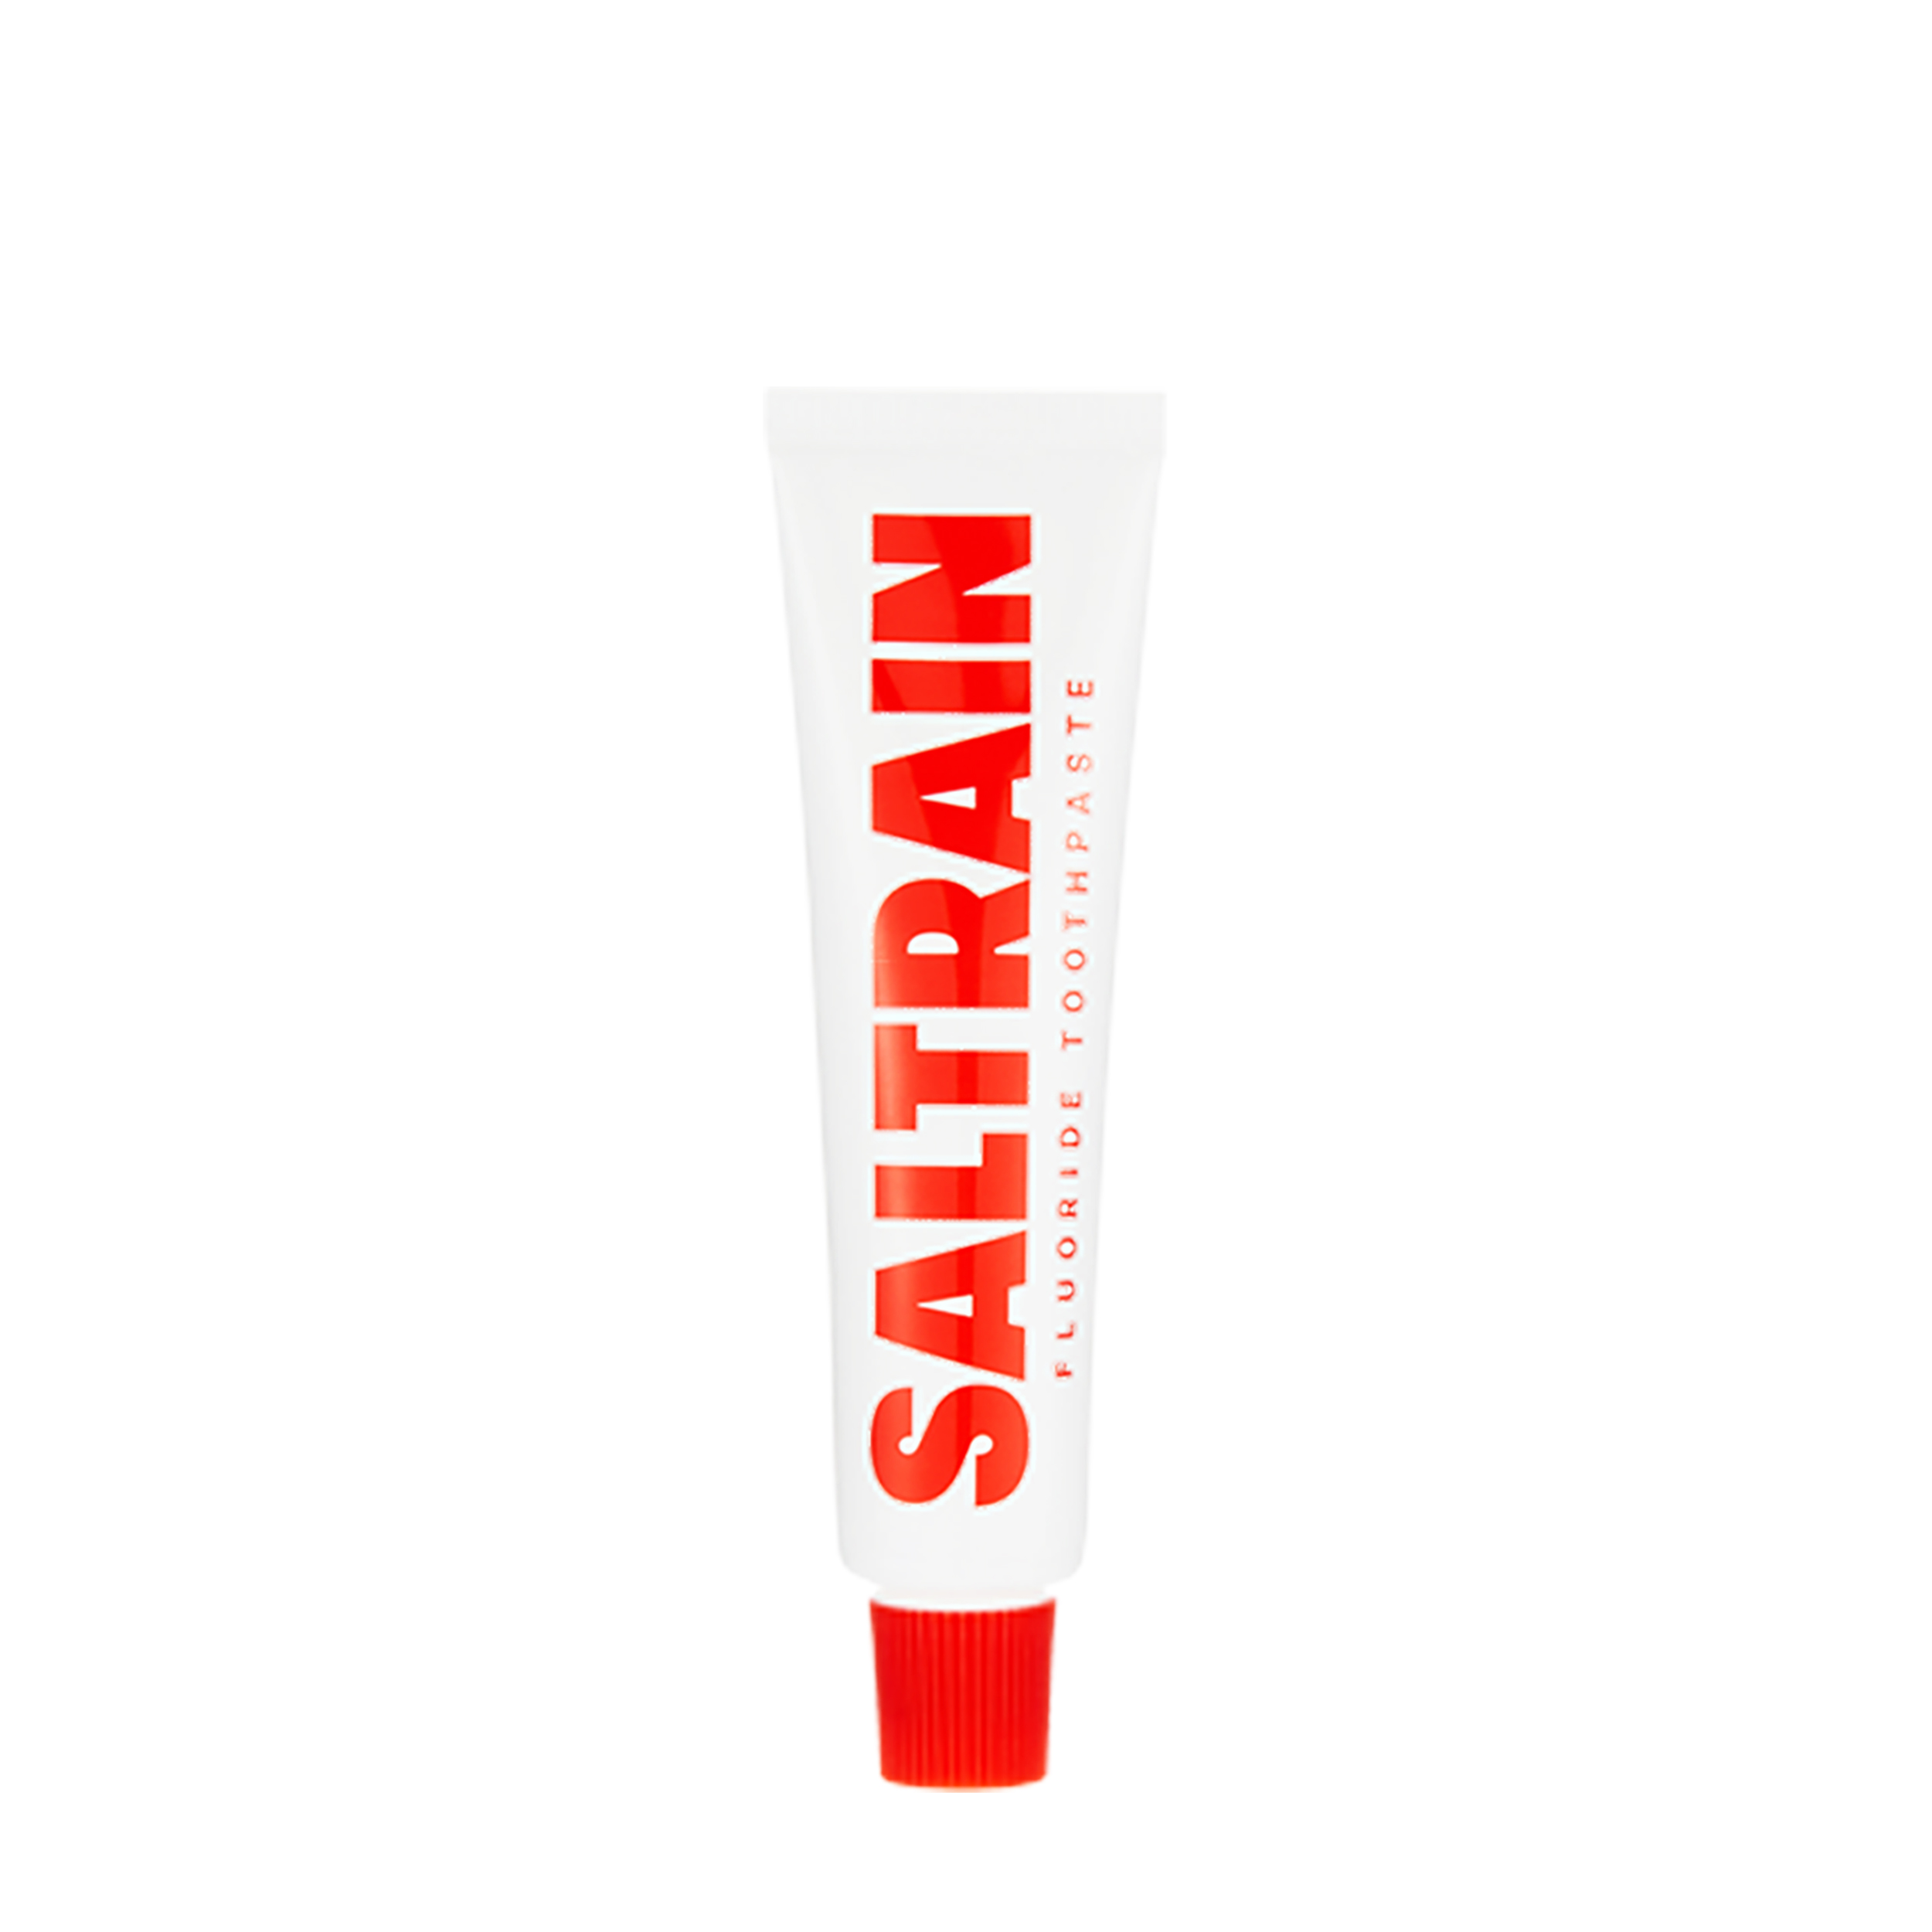 SALTRAIN SALTRAIN Зубная паста с фтором Fluoride Toothpaste в дорожном формате 30 гр